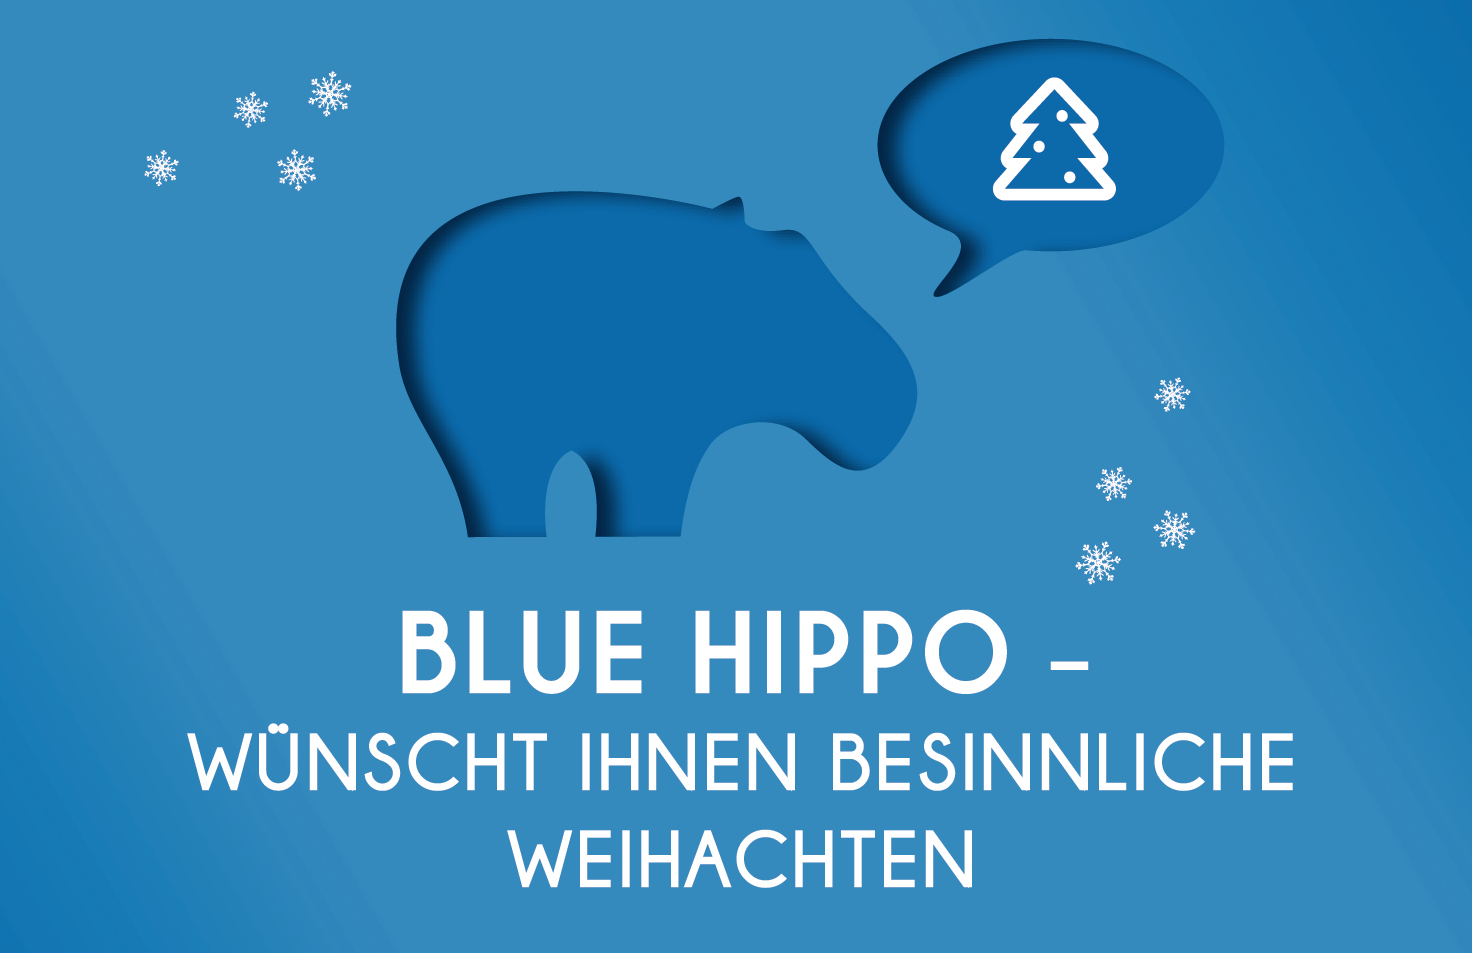 Blue Hippo wünscht schöne Weihnachten